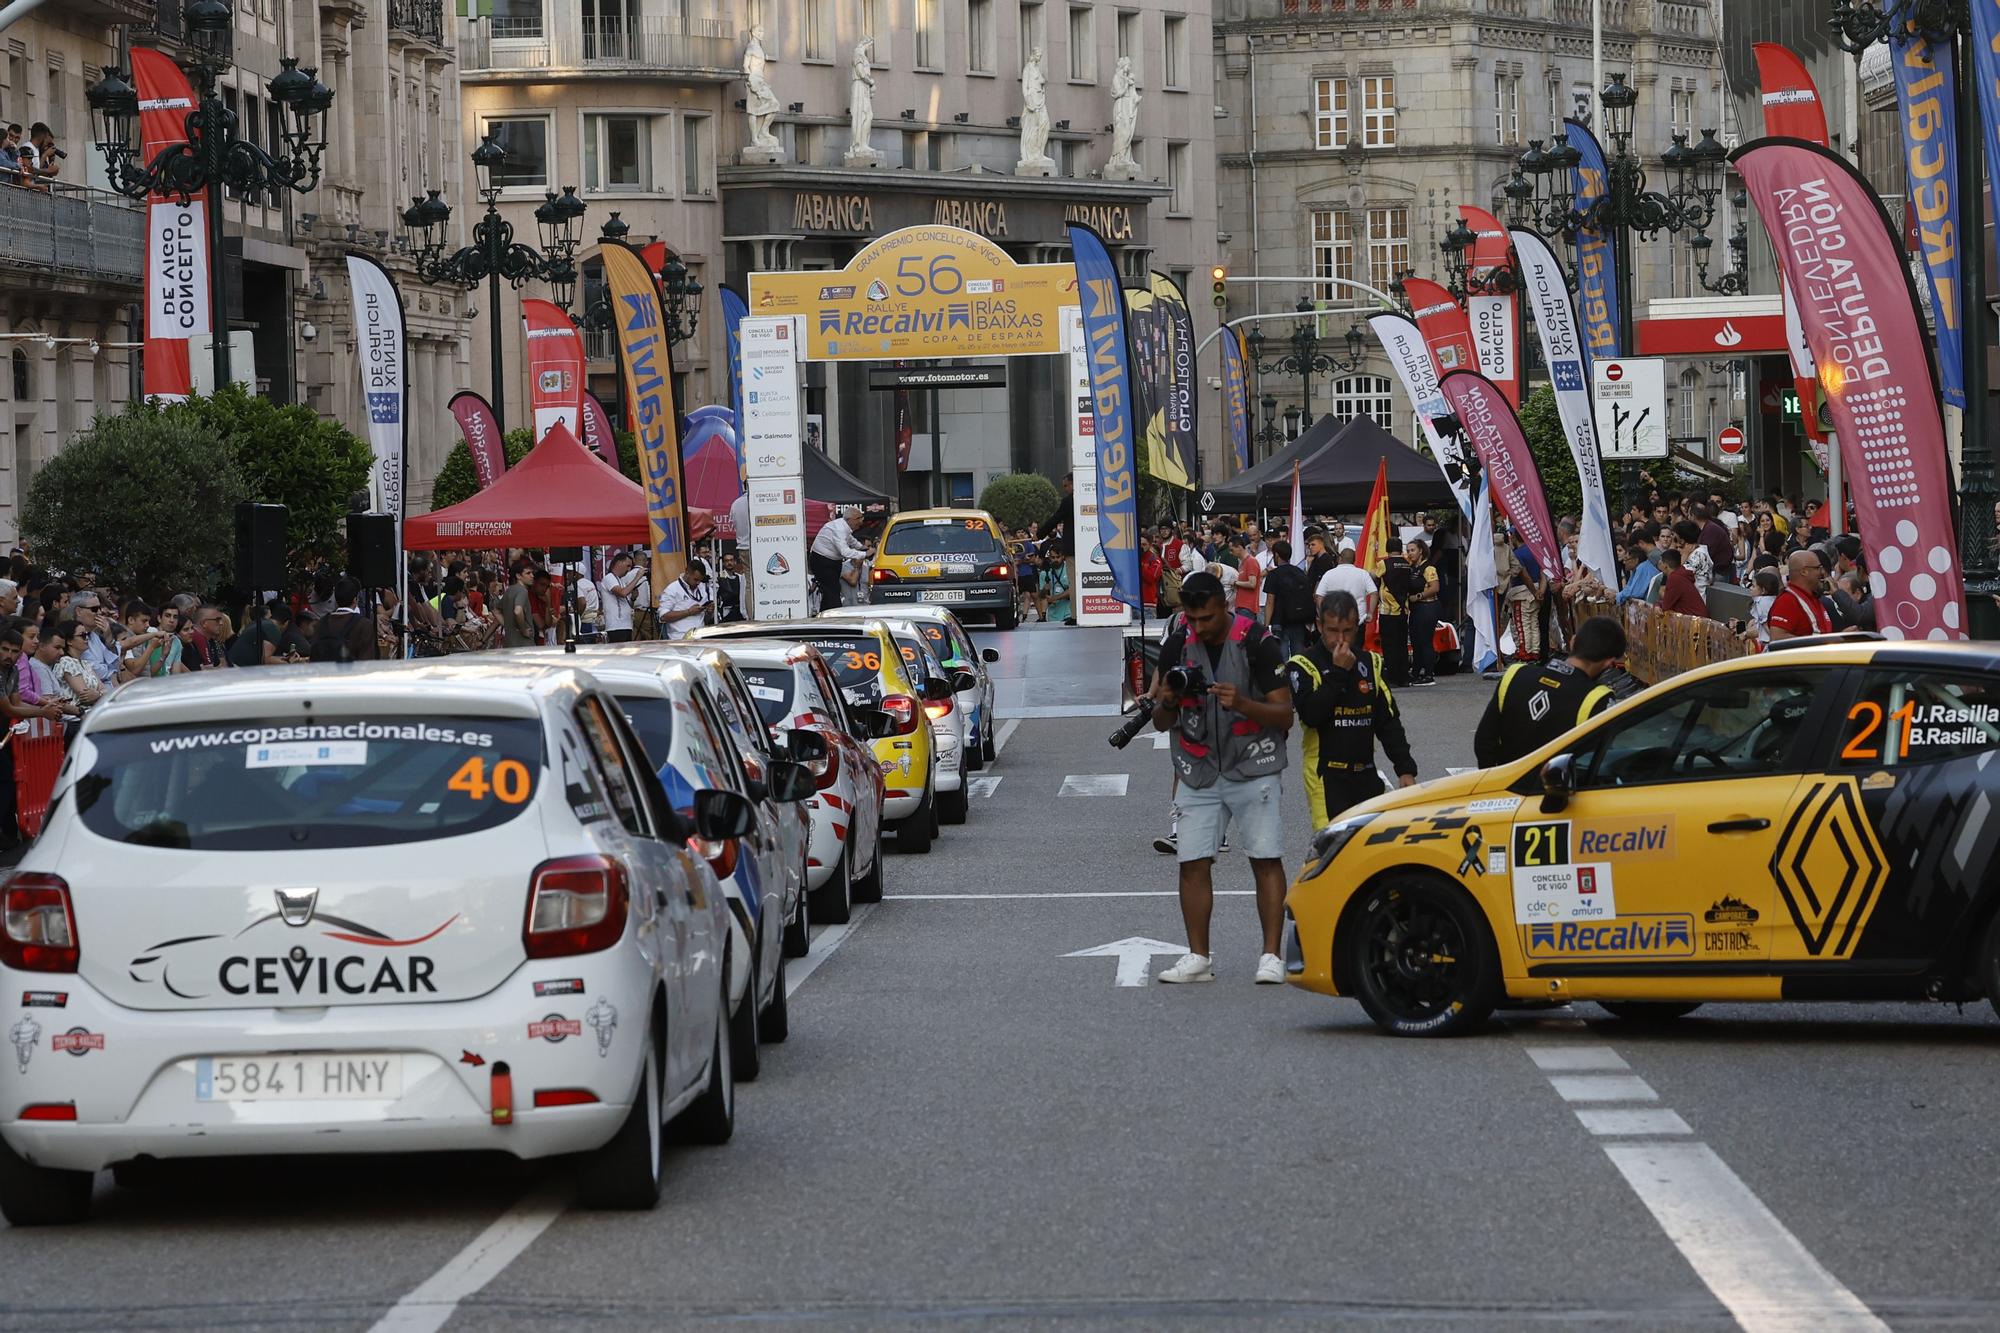 La fiebre del Rallye Recalvi Rías Baixas rompe los termómetros